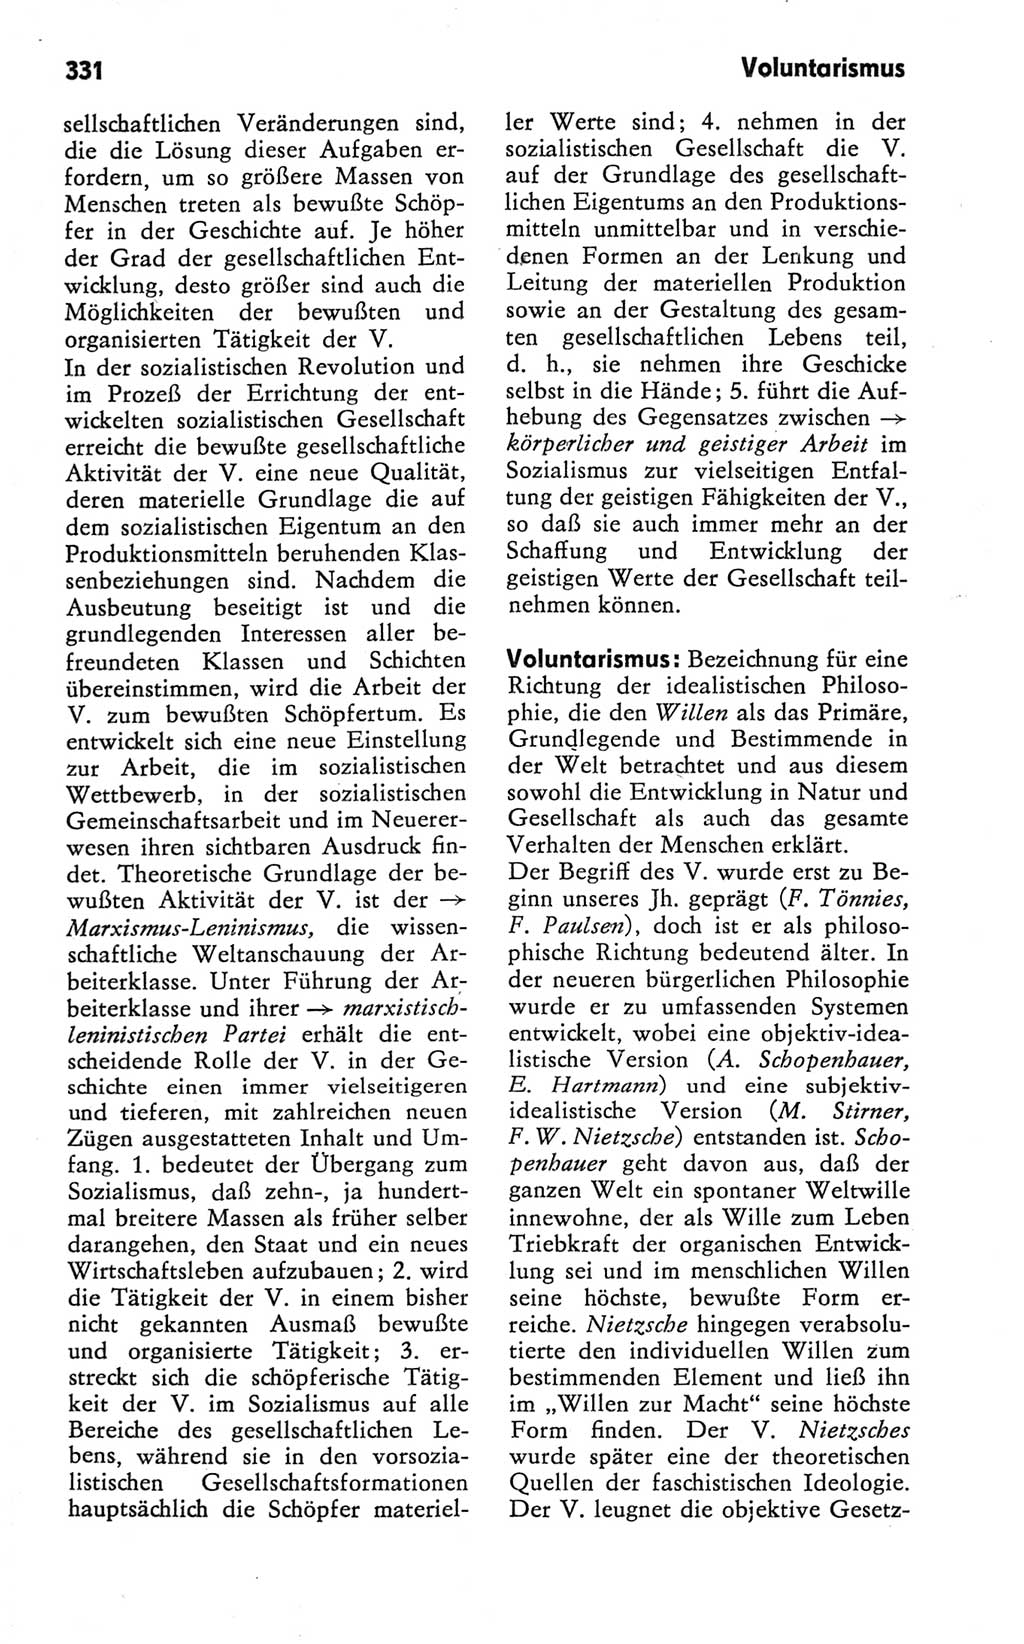 Kleines Wörterbuch der marxistisch-leninistischen Philosophie [Deutsche Demokratische Republik (DDR)] 1981, Seite 331 (Kl. Wb. ML Phil. DDR 1981, S. 331)